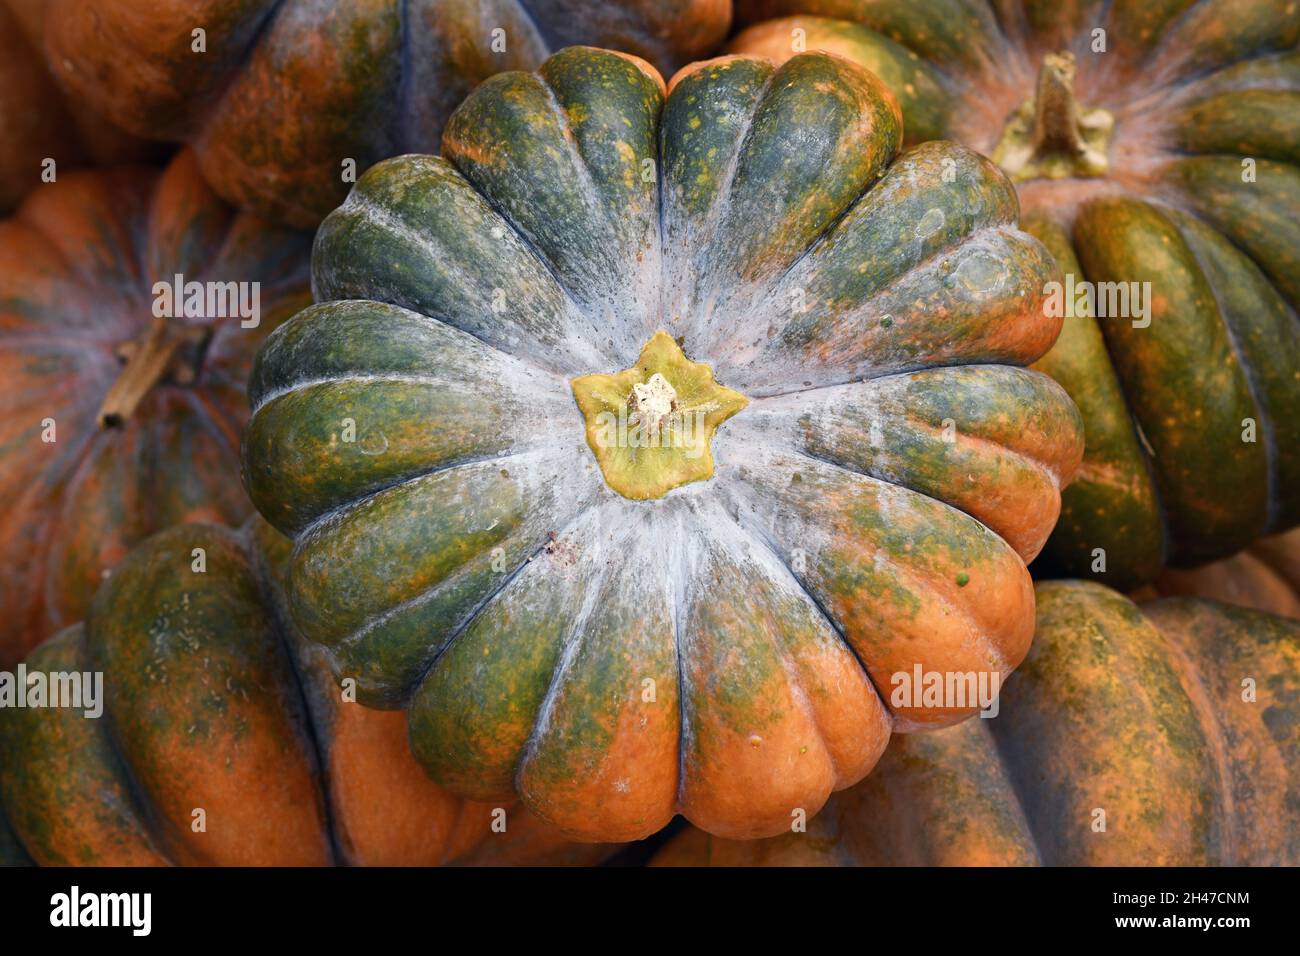 Vista superior de calabaza verde y naranja 'Musque de Provence' en pila Foto de stock